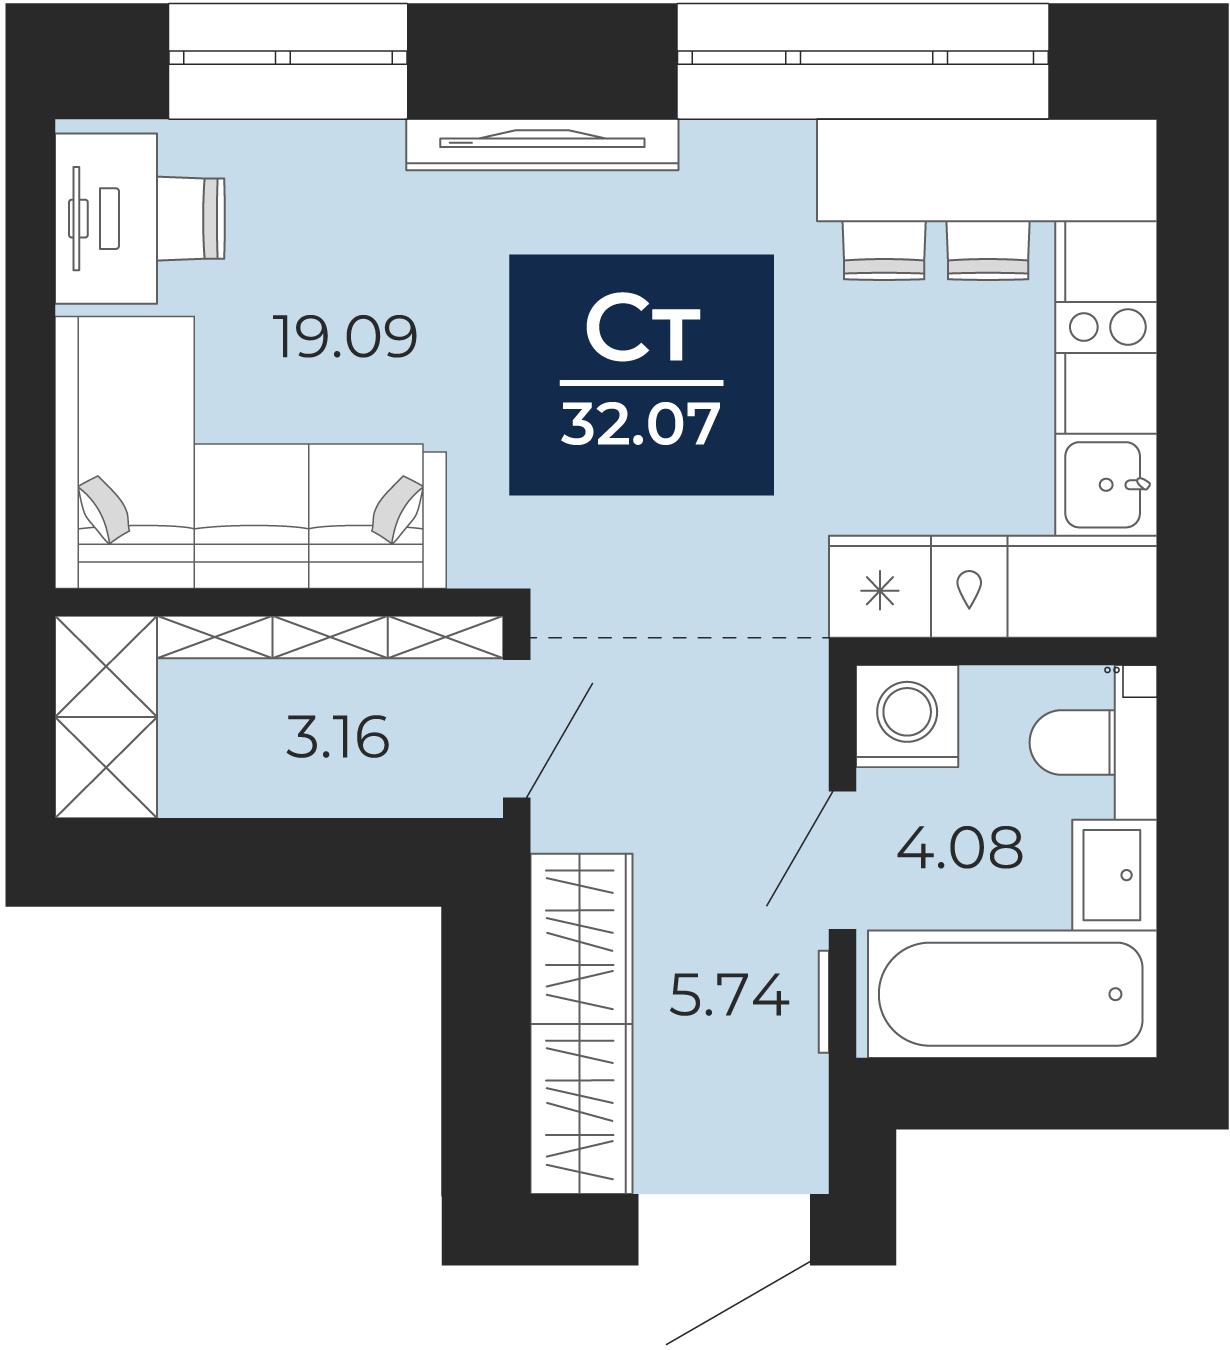 Квартира № 253, Студия, 32.07 кв. м, 10 этаж